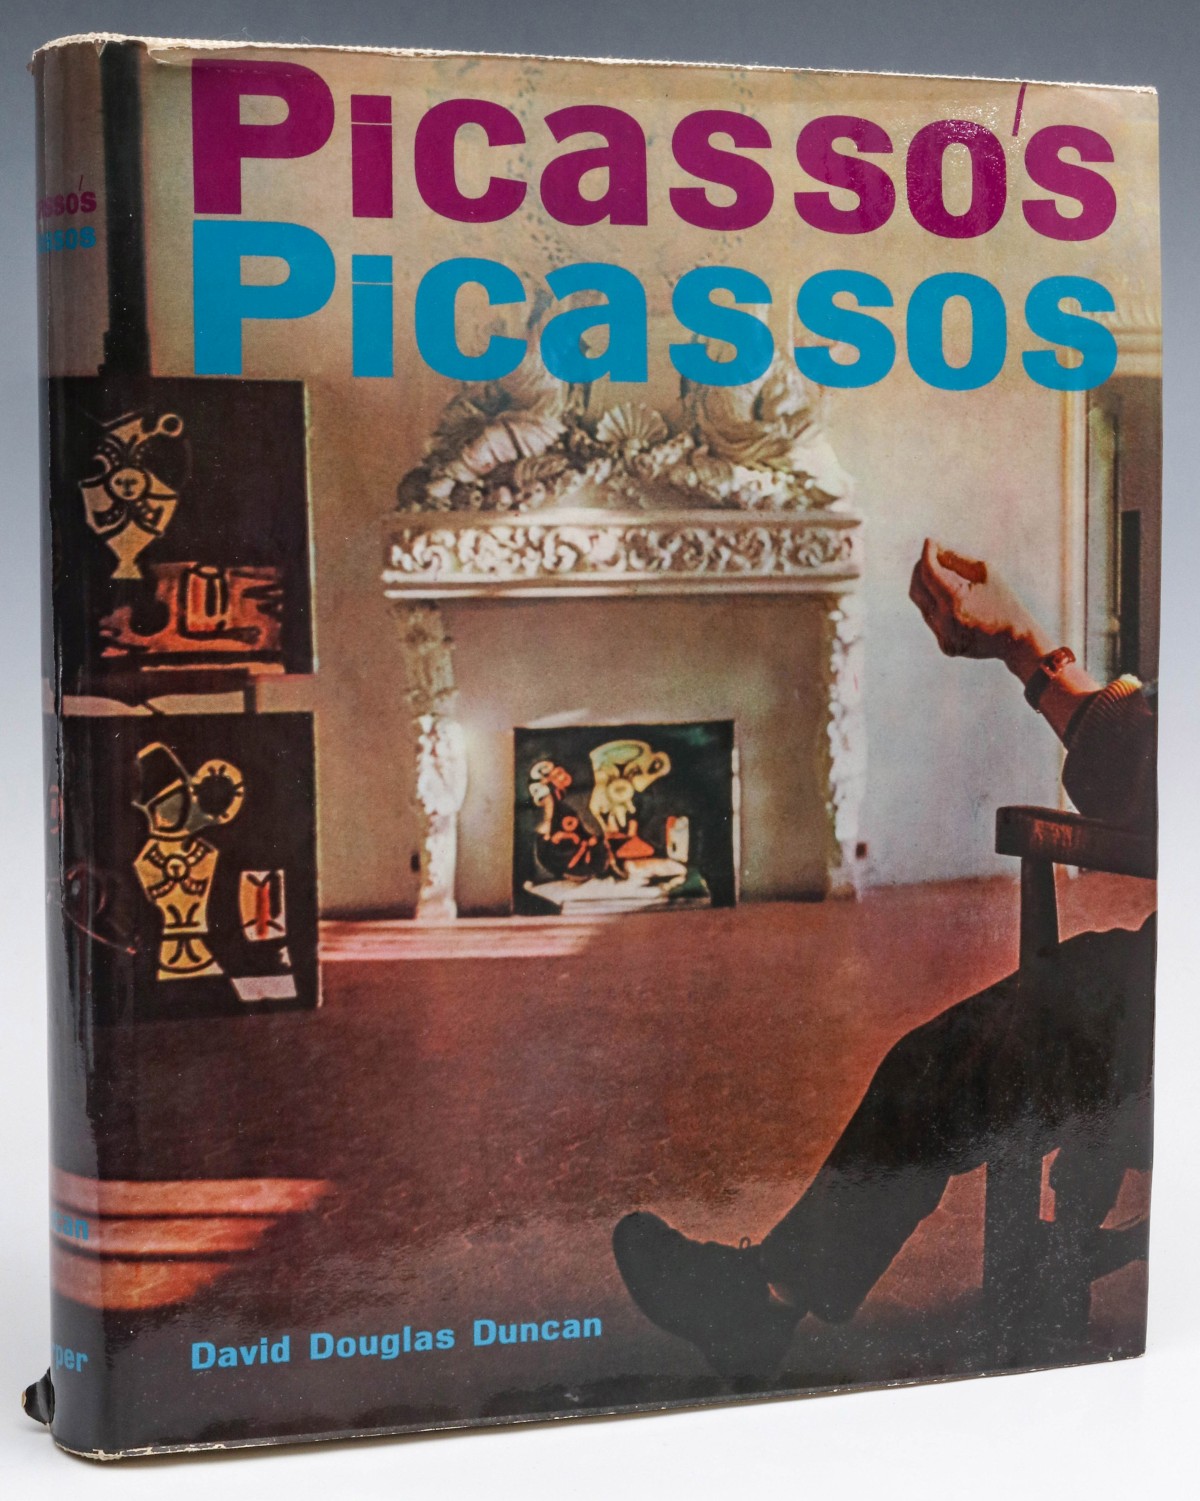 DAVID DUNCAN DOUGLAS 'PICASSO'S PICASSOS', 1961